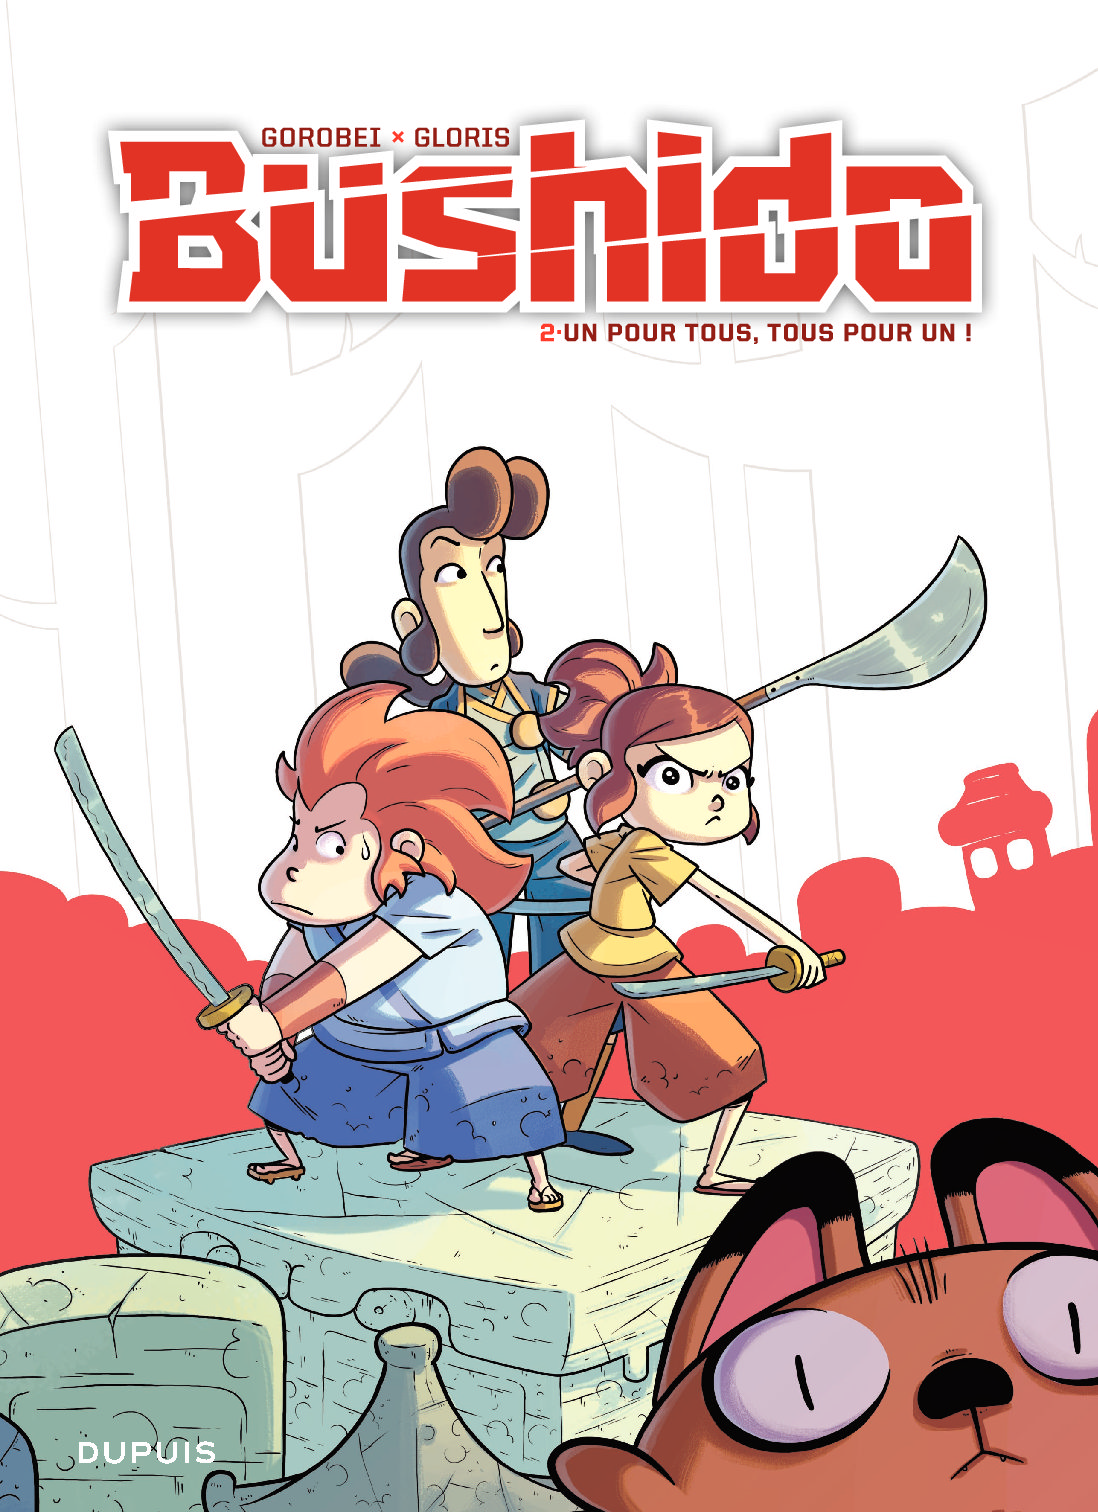 Les 2 premiers tomes de la série BD Bushido de Gorobei et Thierry Gloris sont déjà sortis.